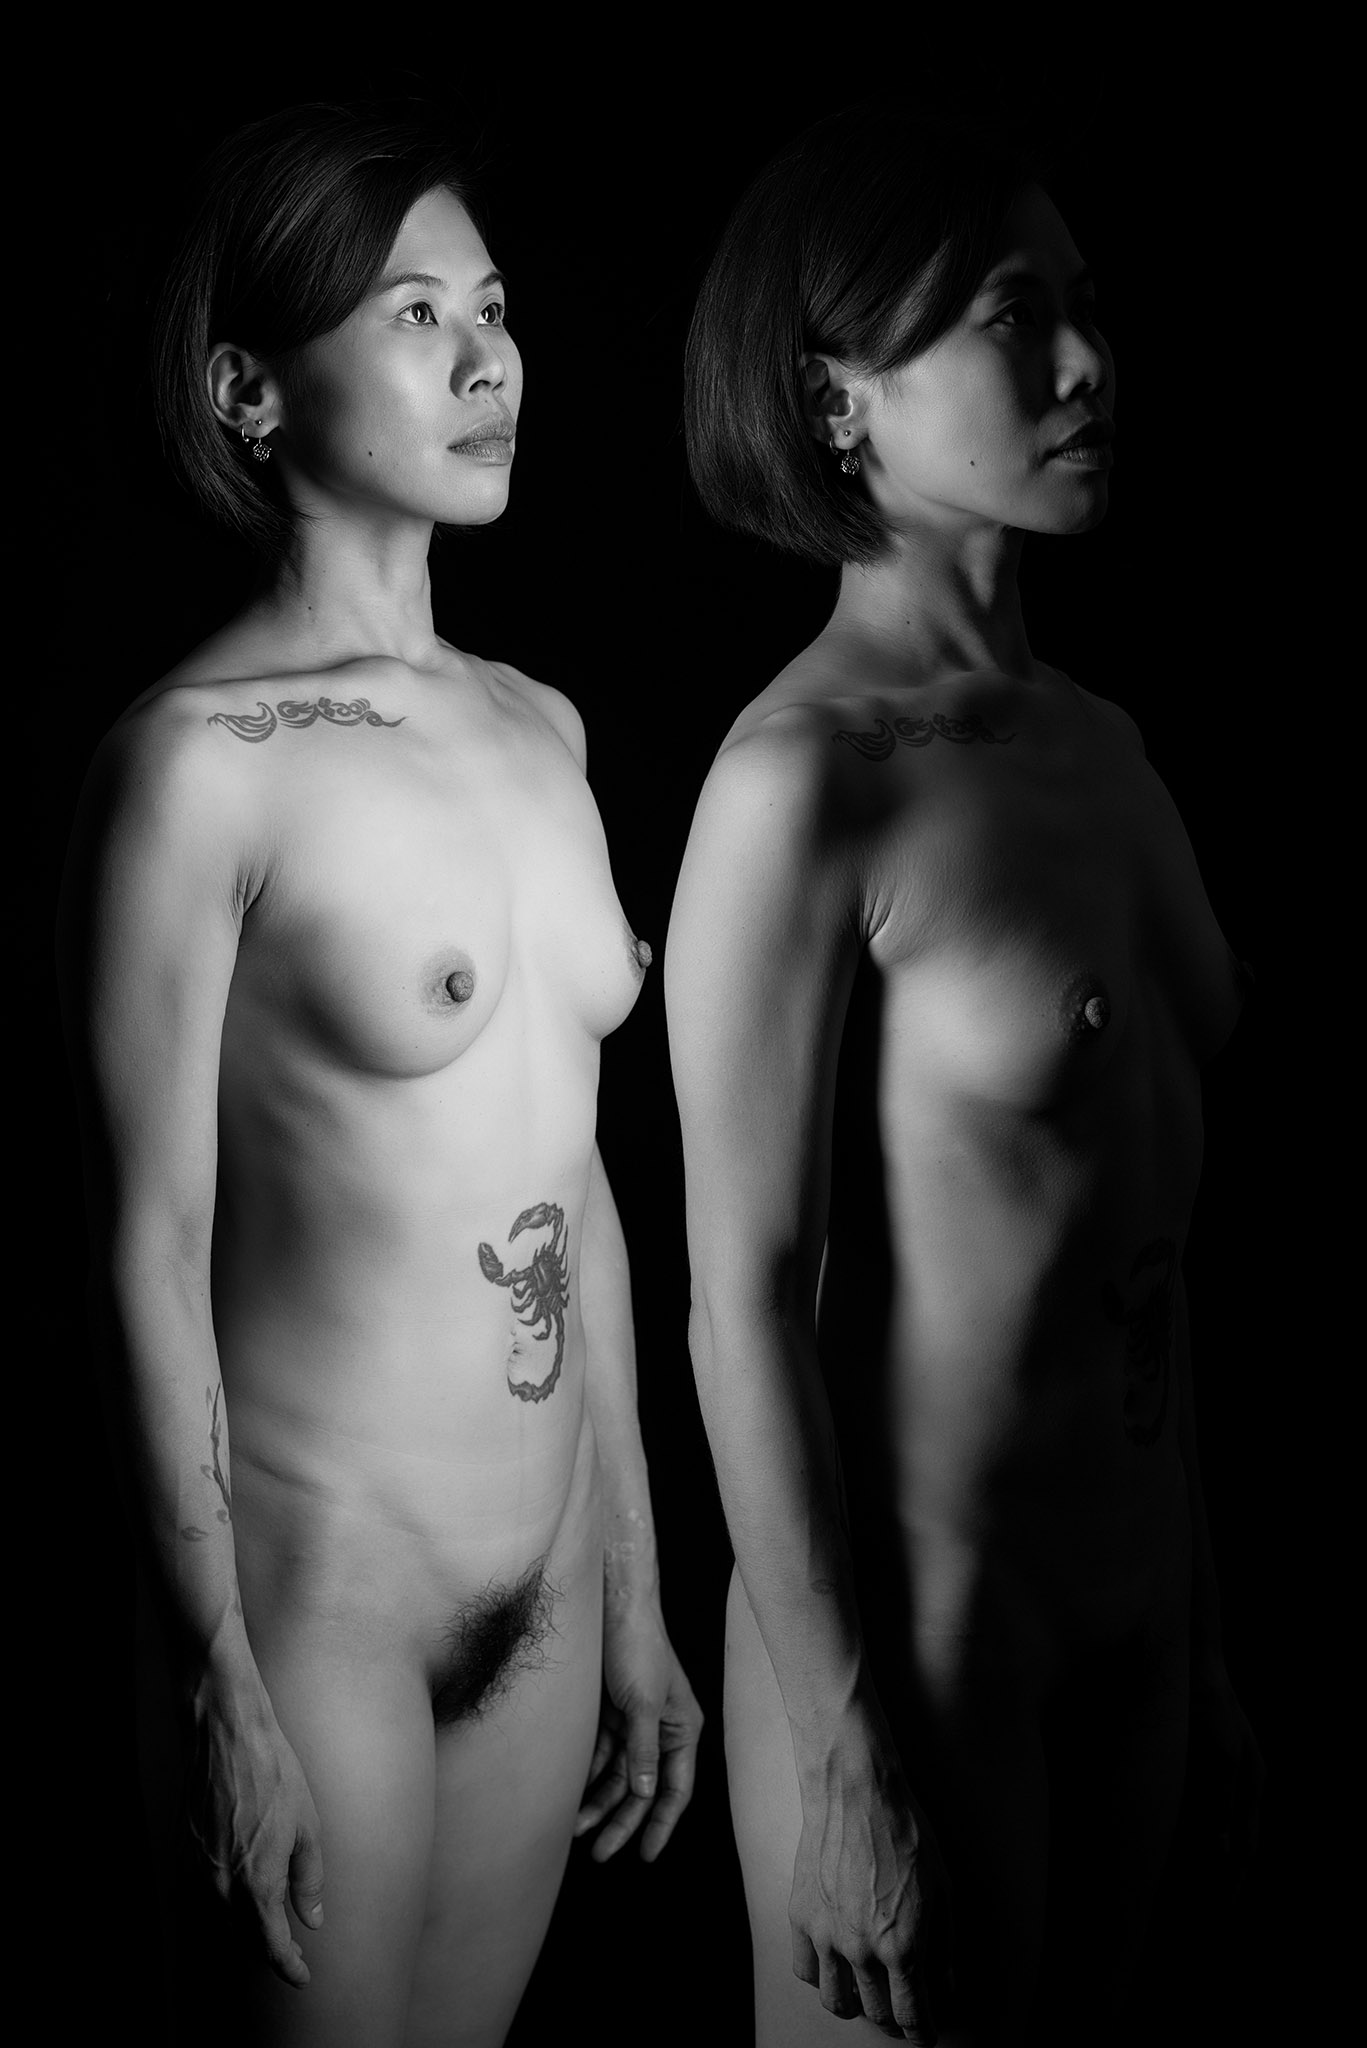 Suelynee ho's model work Photo by Darren body art